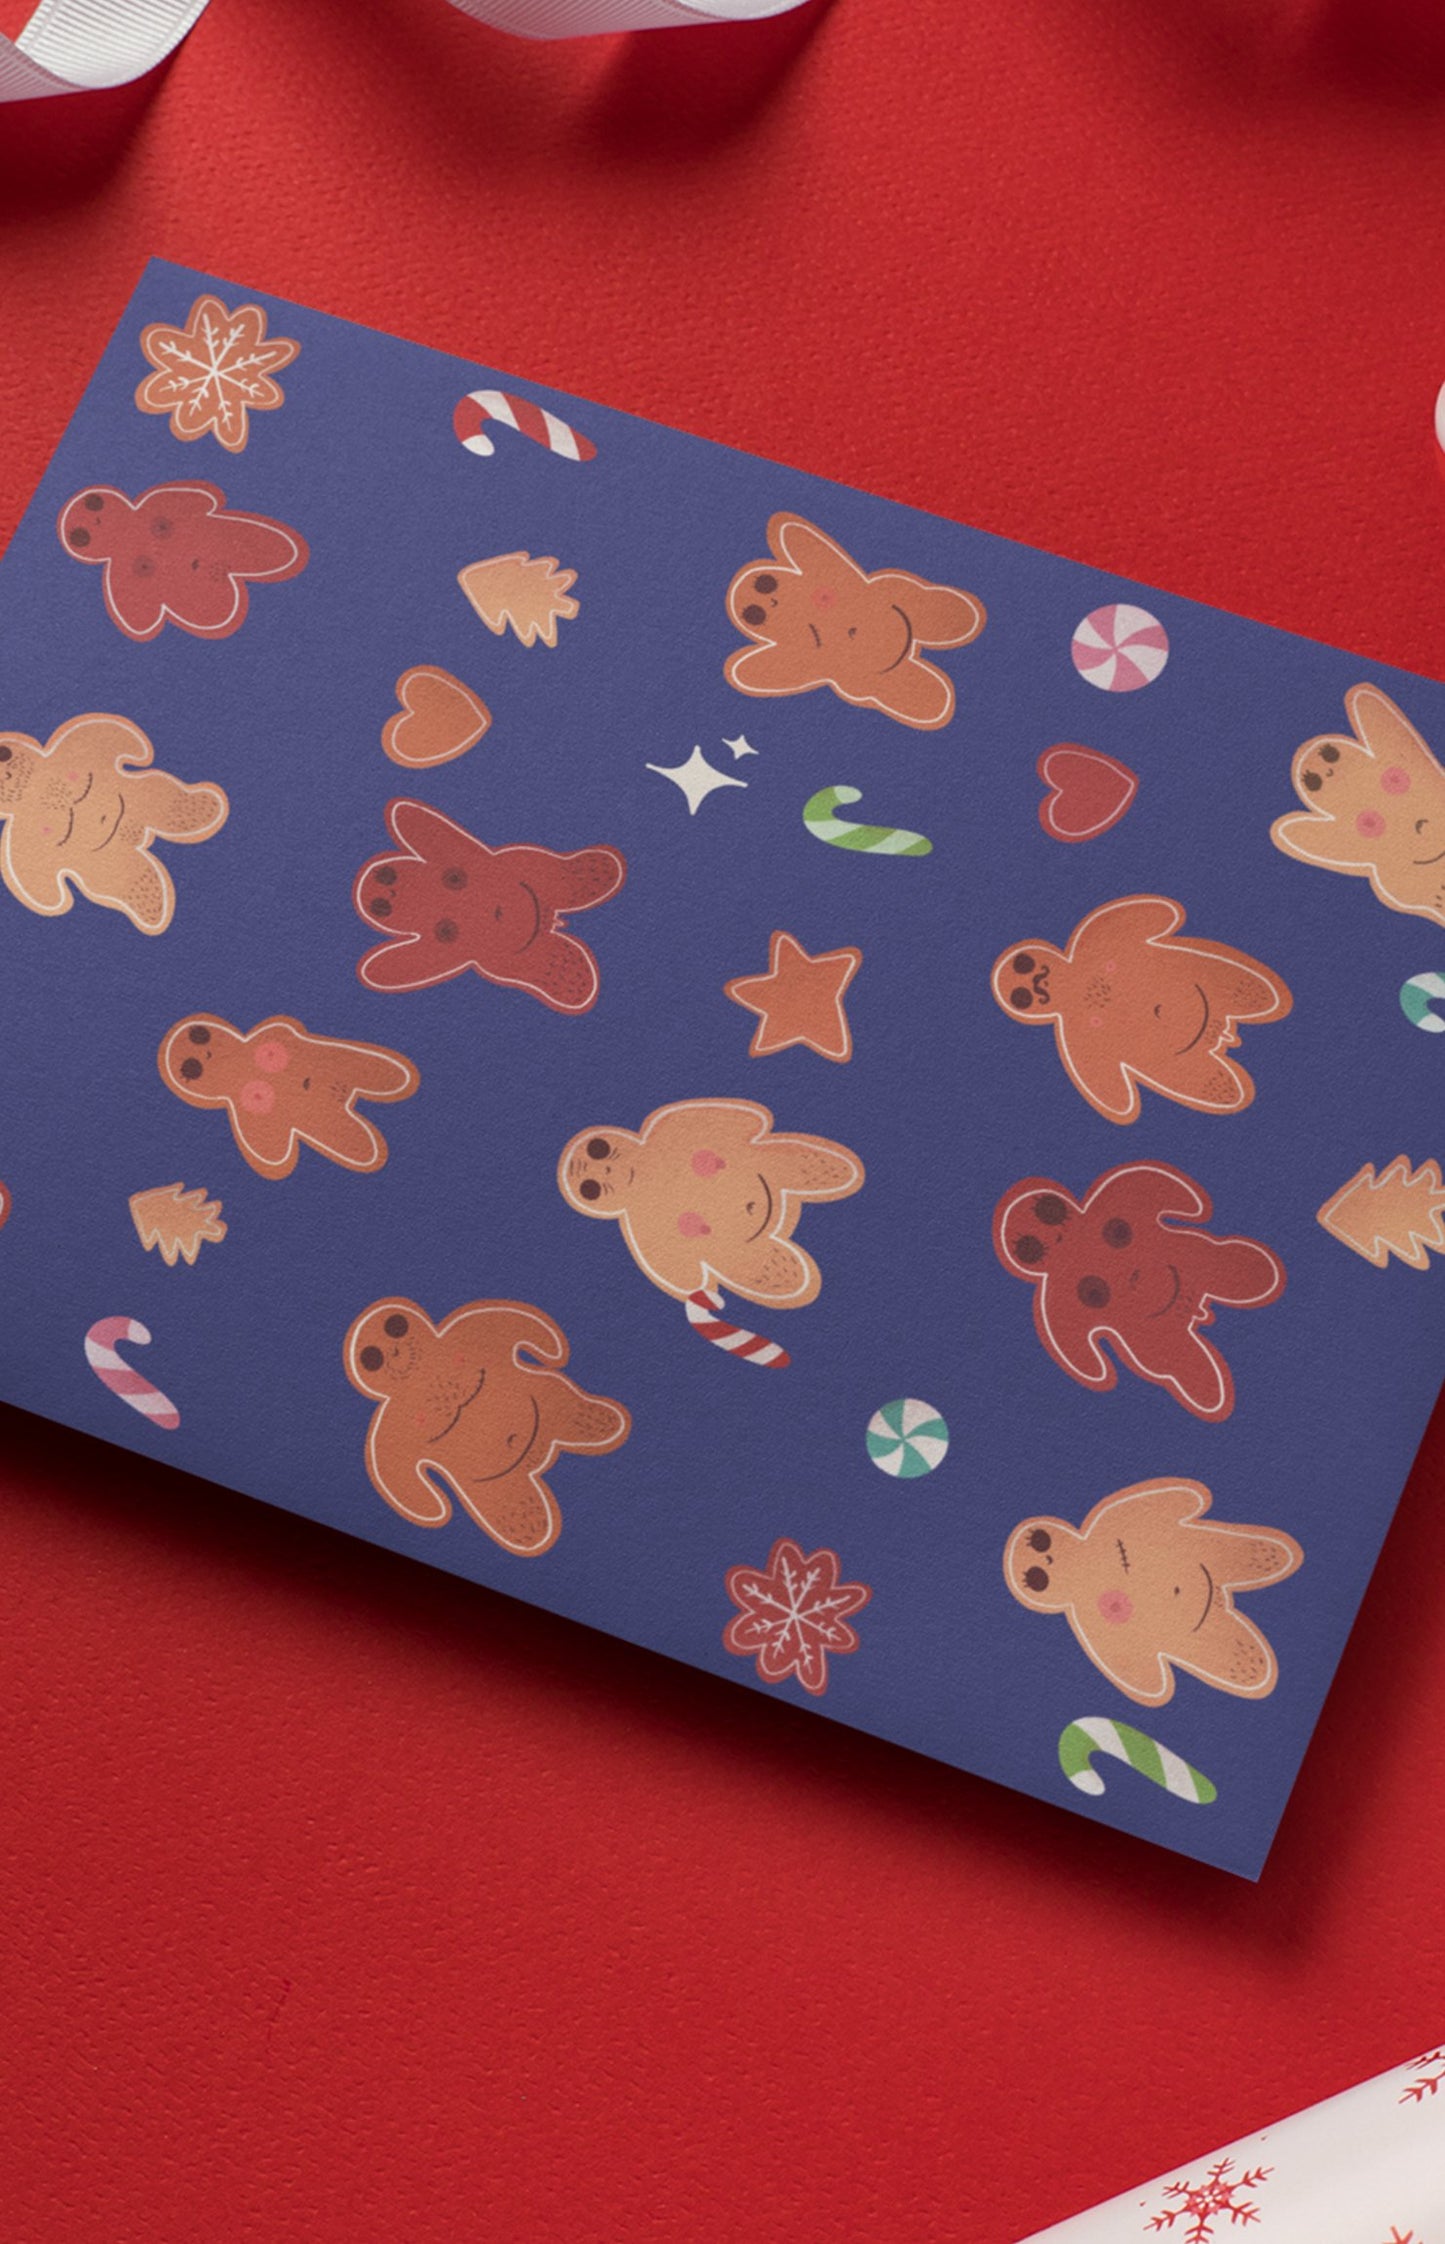 Postcard - Gingerbread cookies